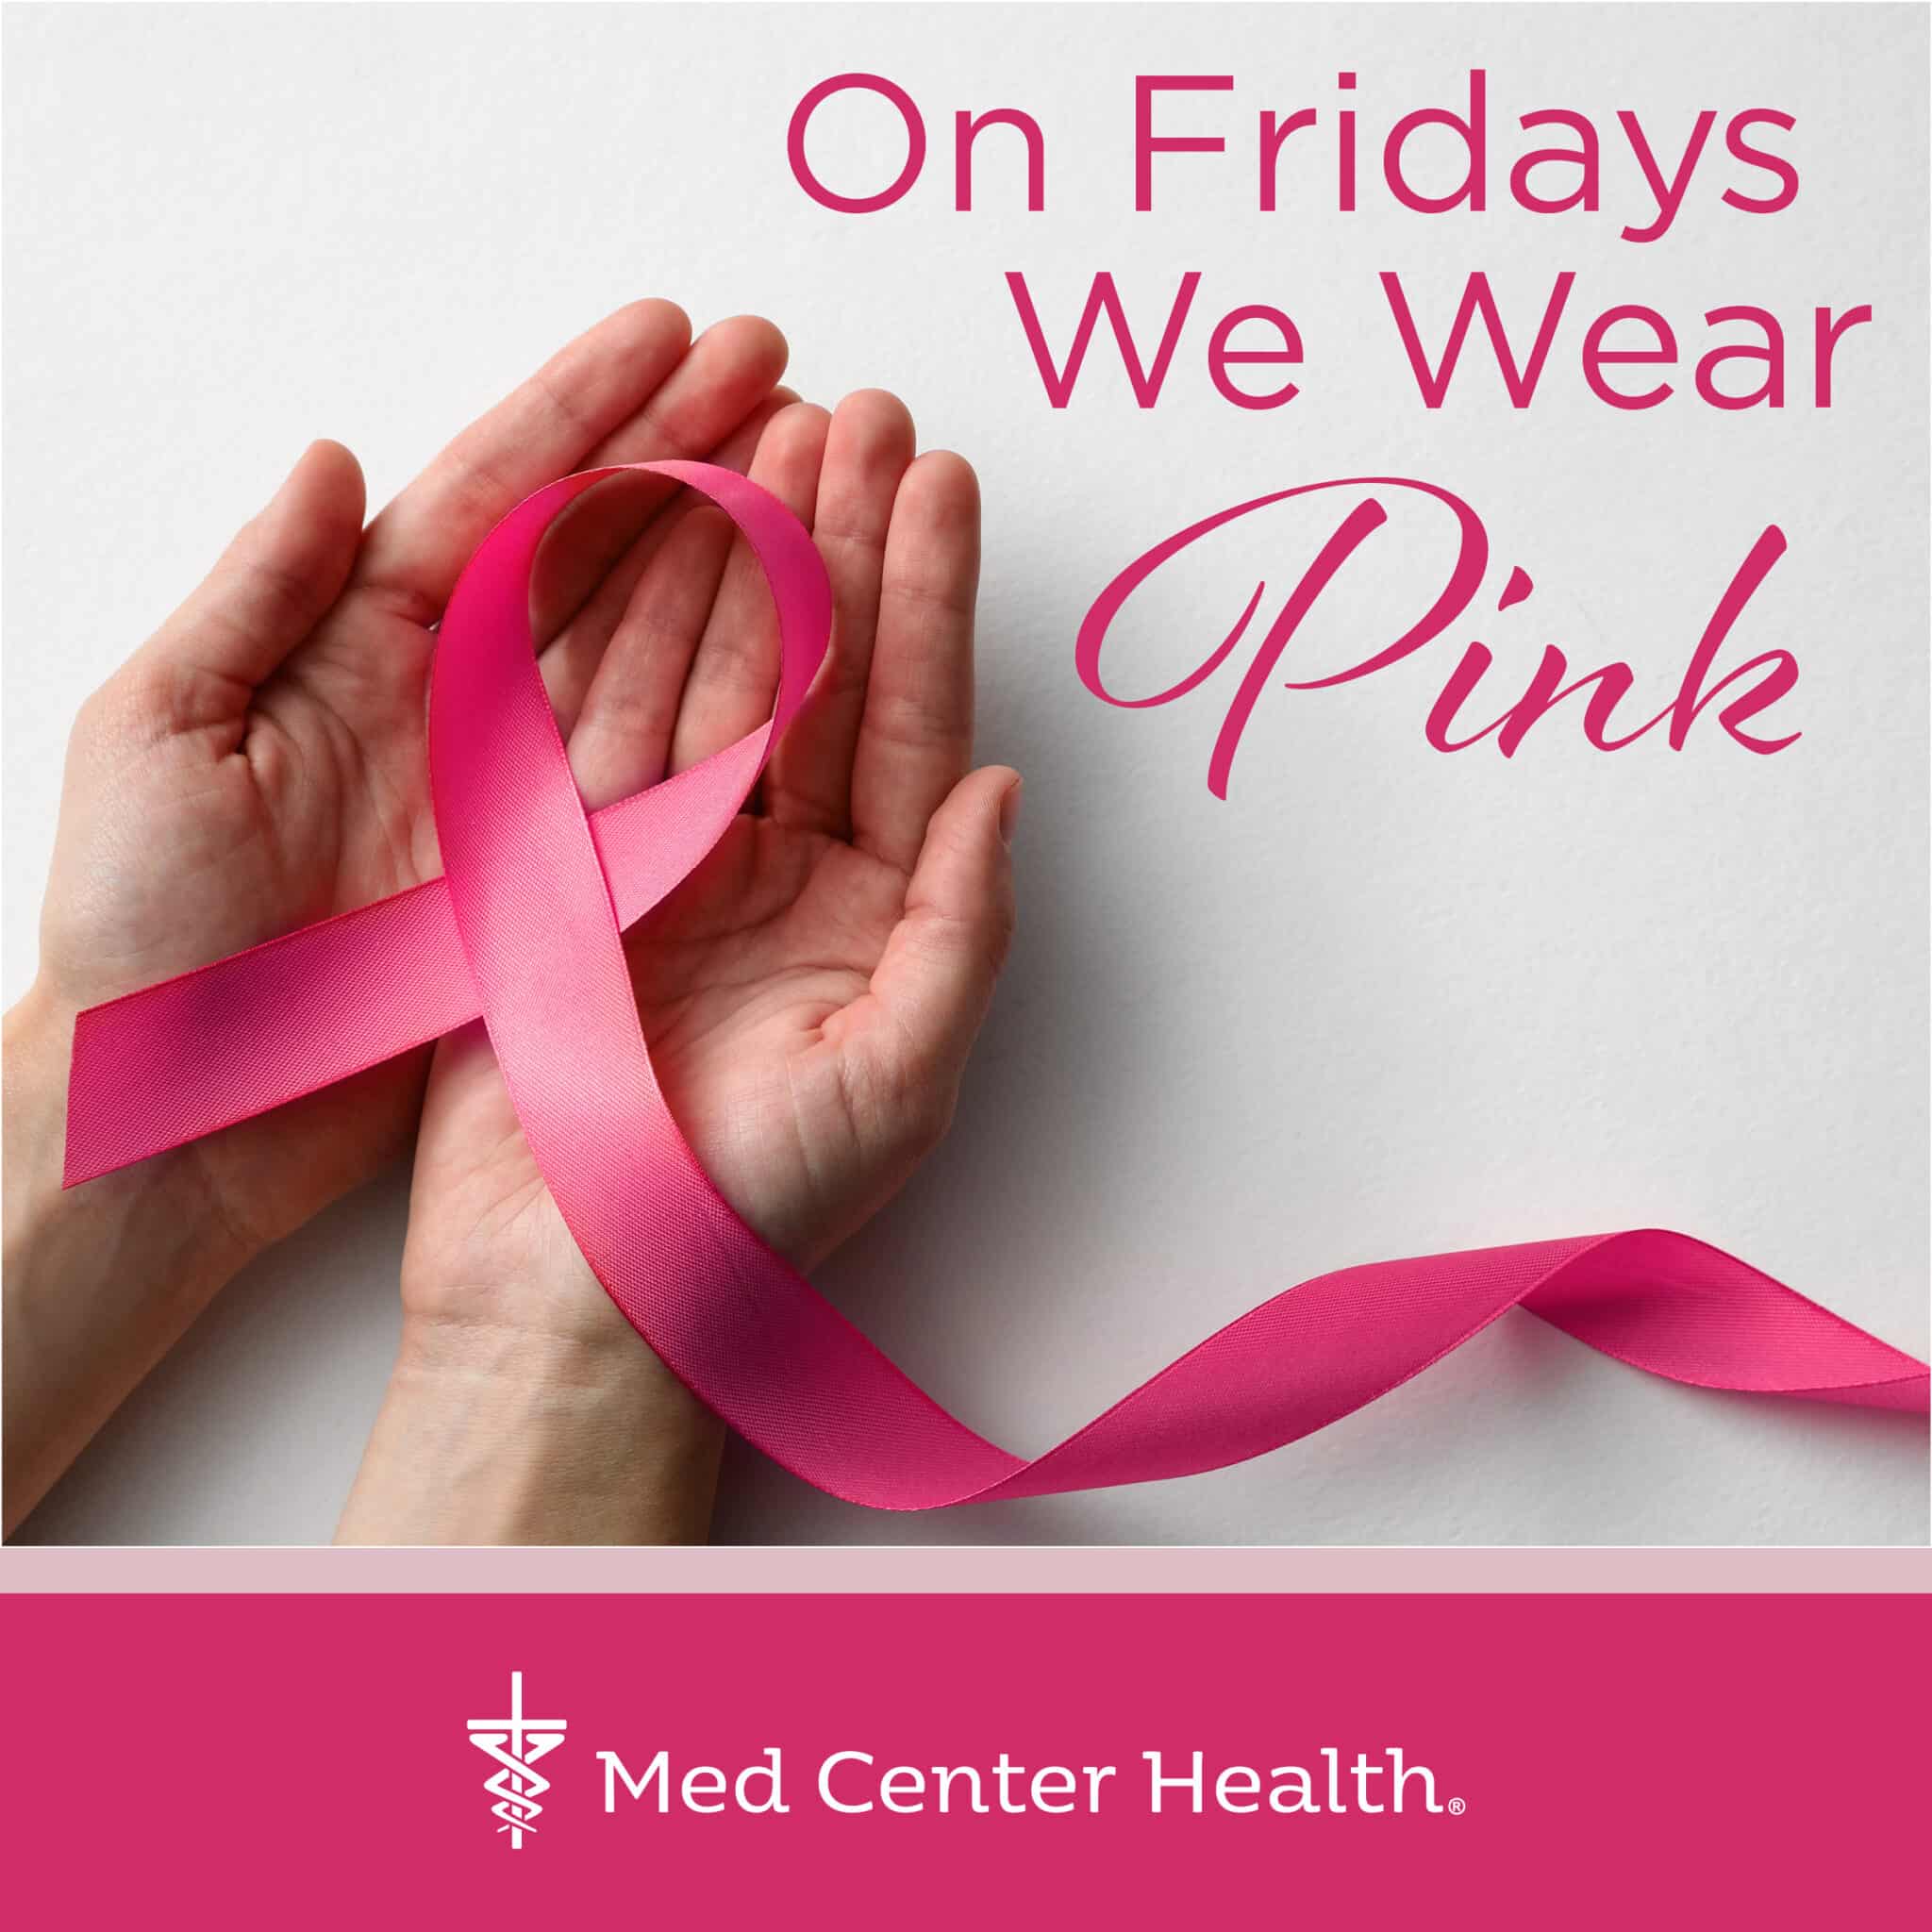 On Fridays we wear pink! – Med Center Health